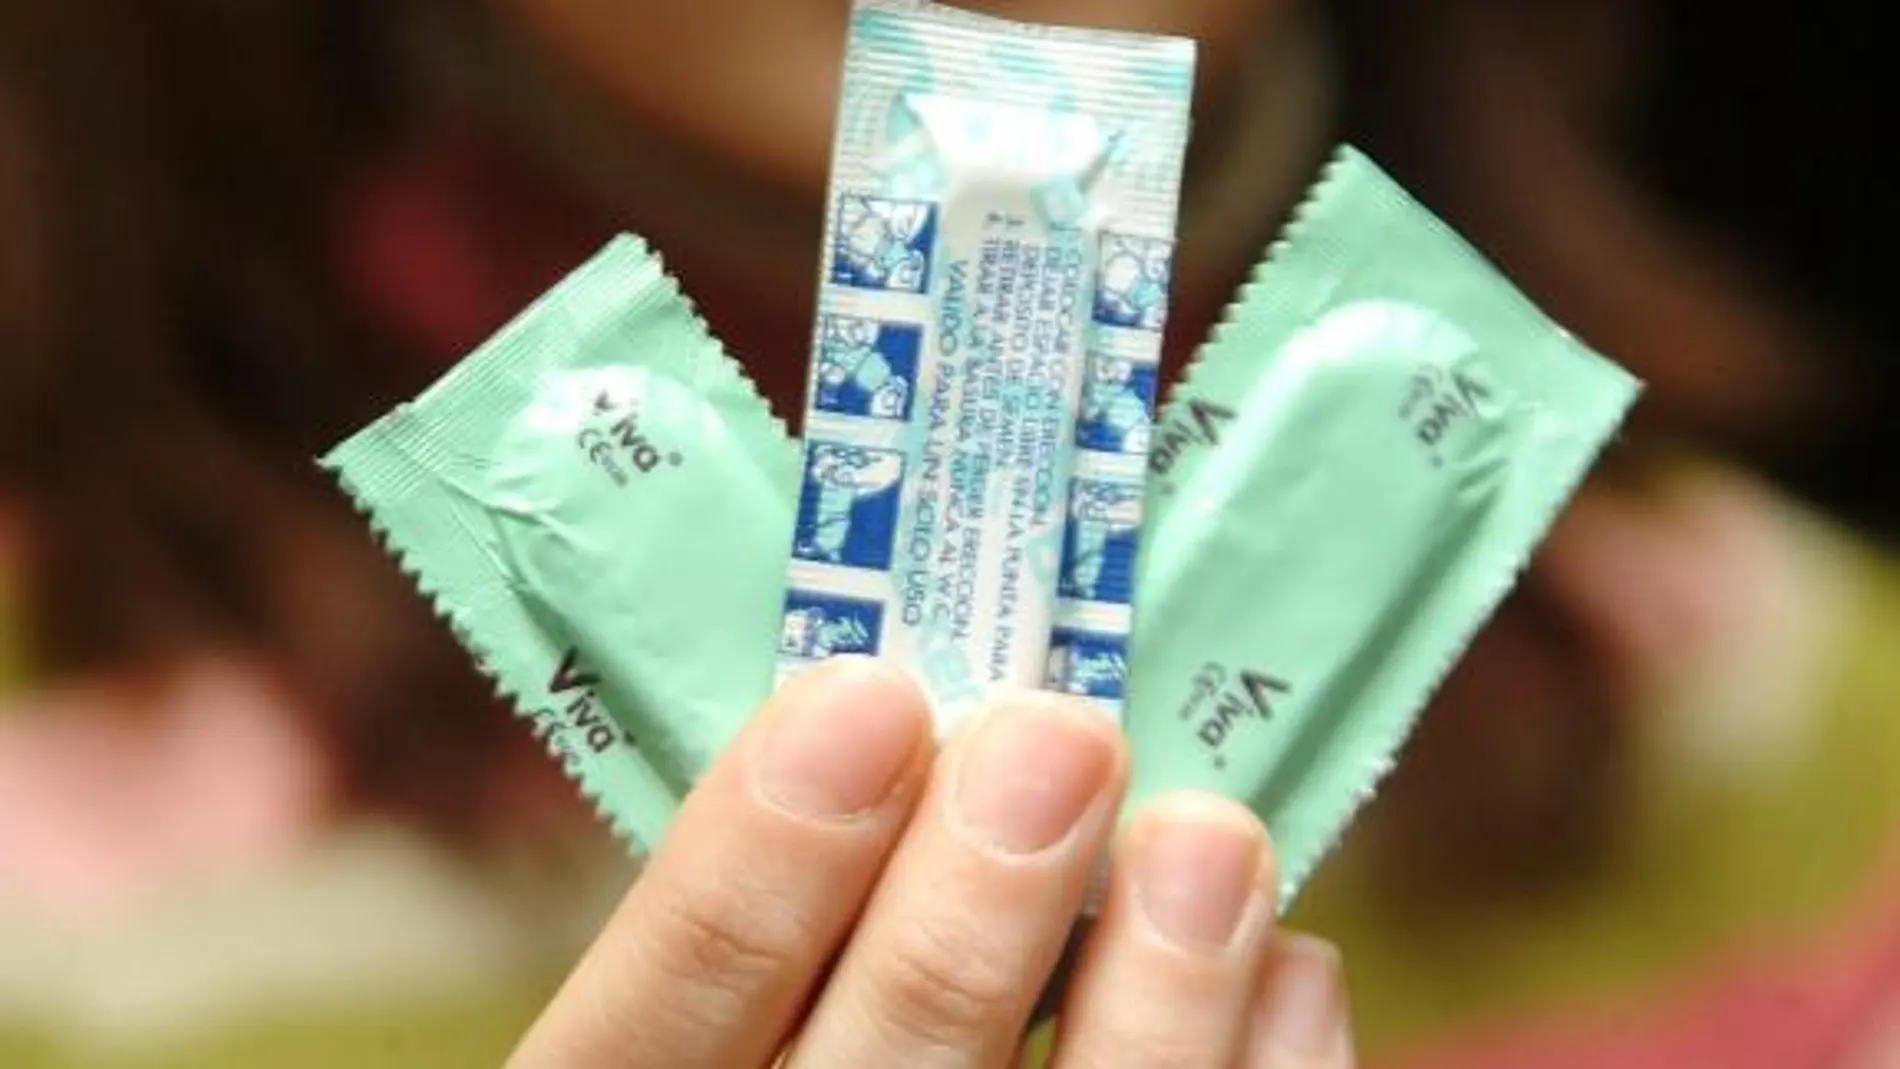 La pandemia aumenta la venta de preservativos